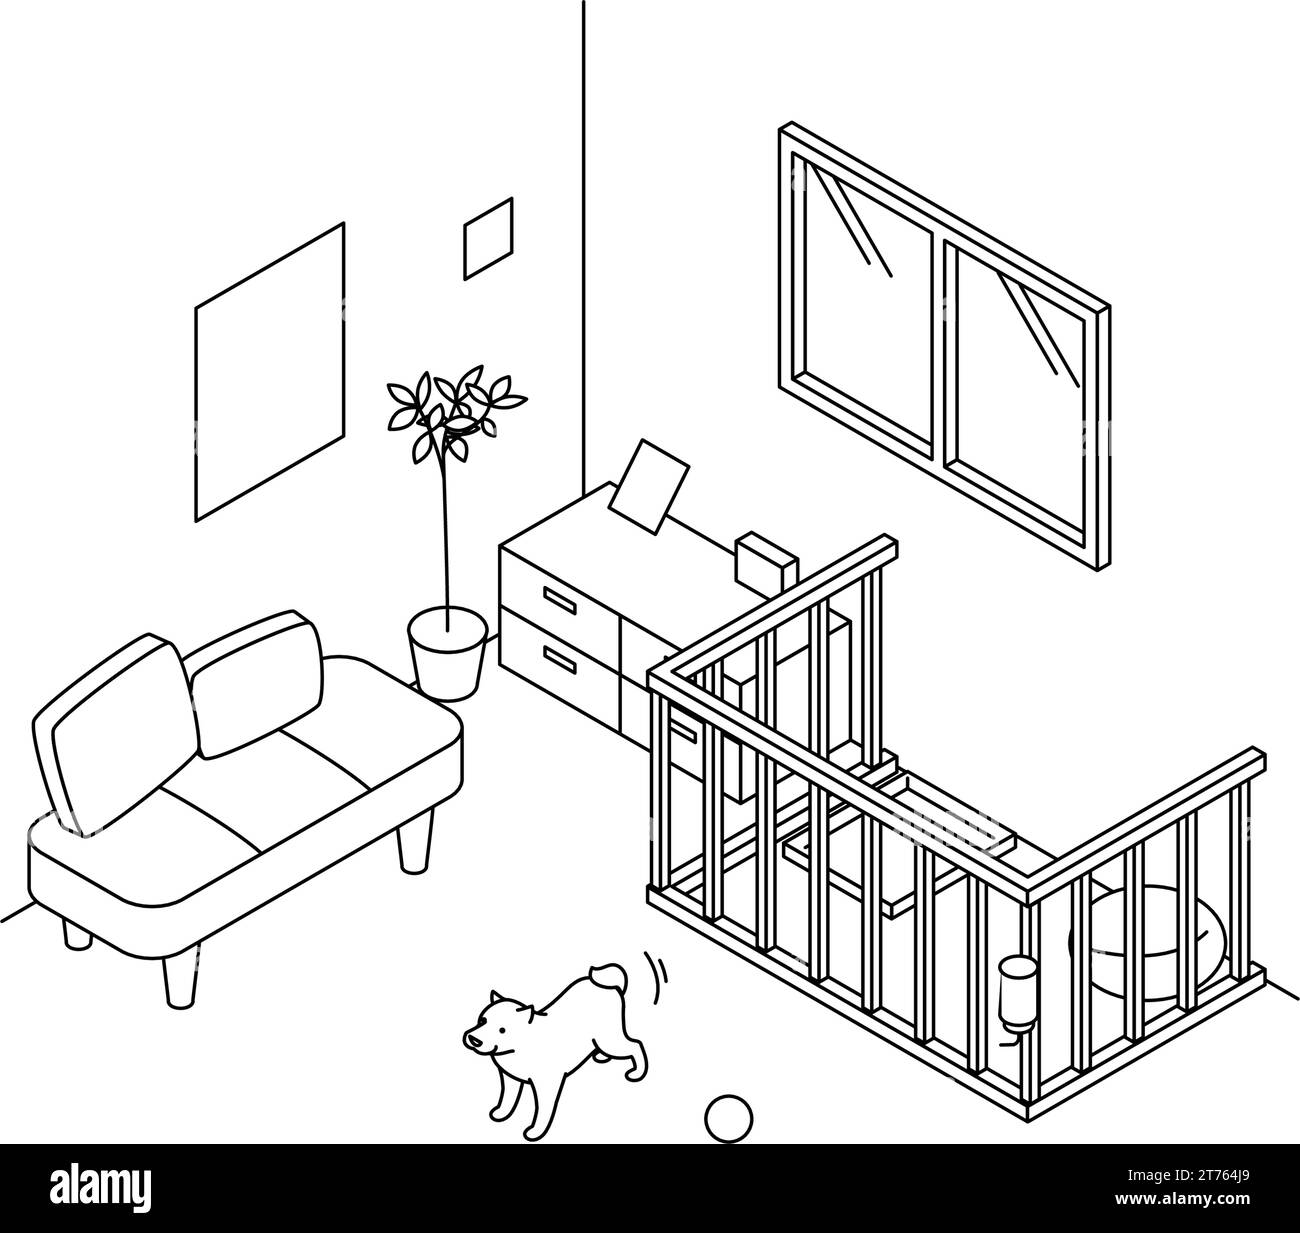 Problemi di rumore negli immobili in affitto: Animali domestici (cani), Vector Illustration Illustrazione Vettoriale